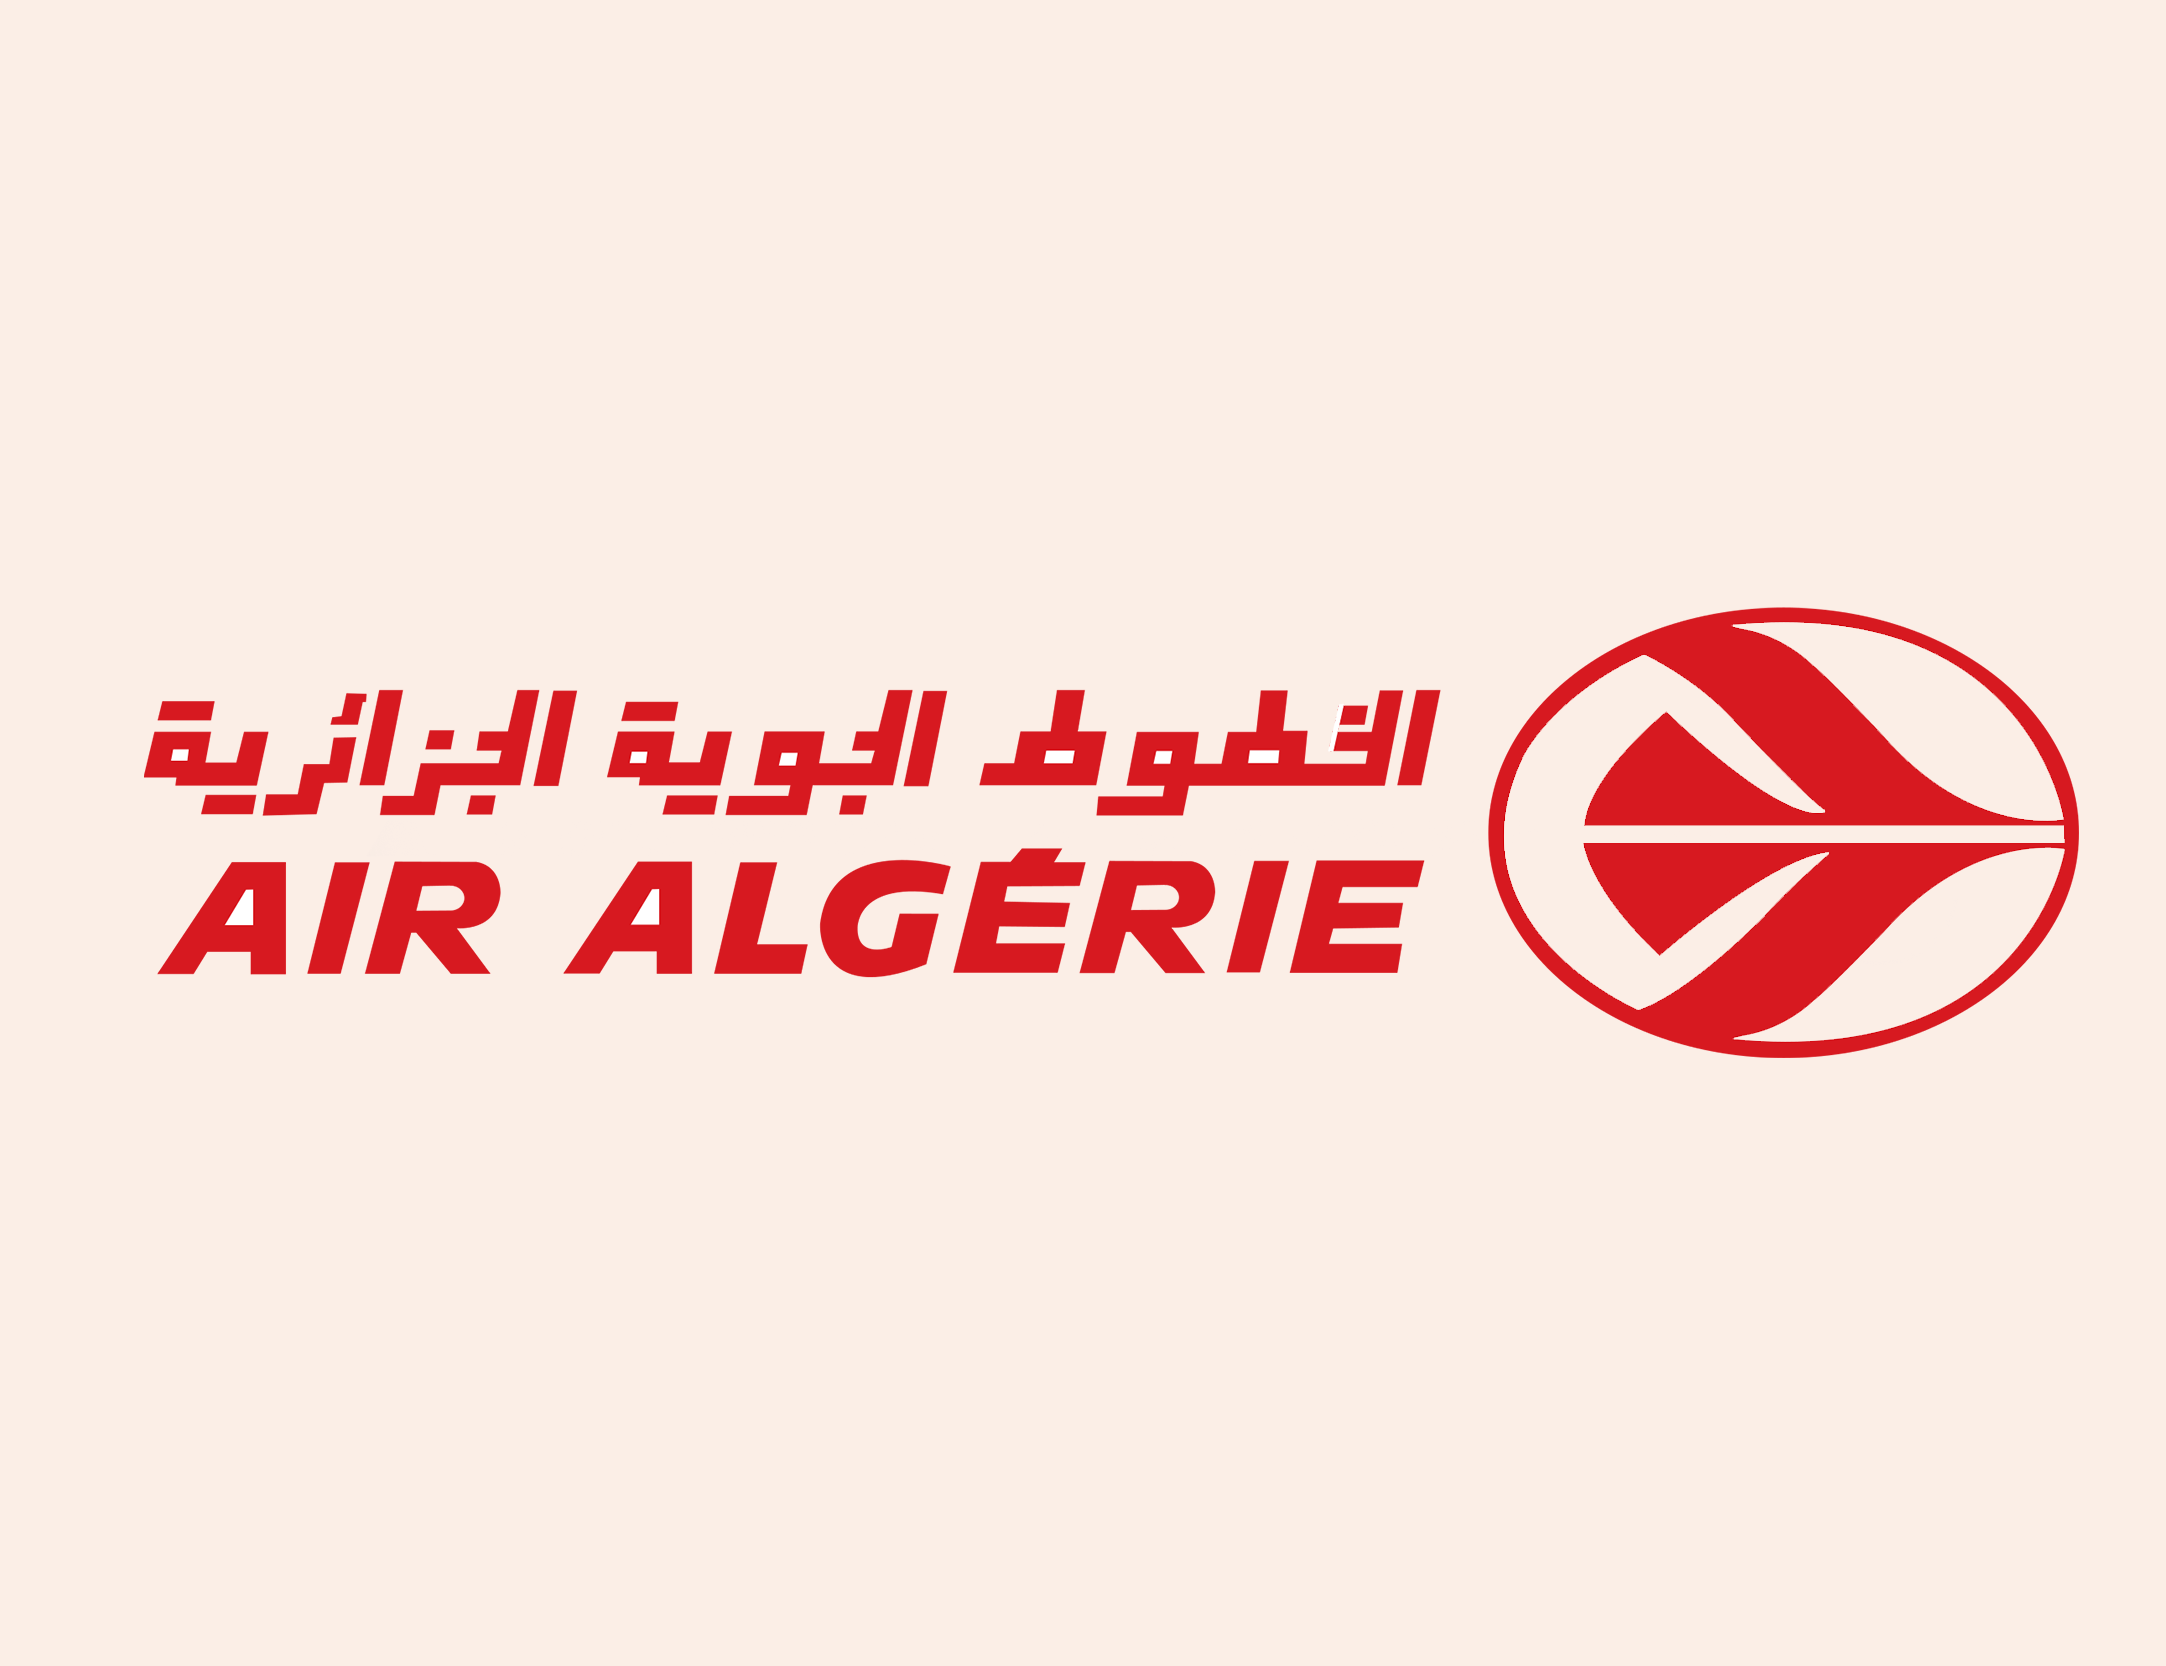 Air algerie